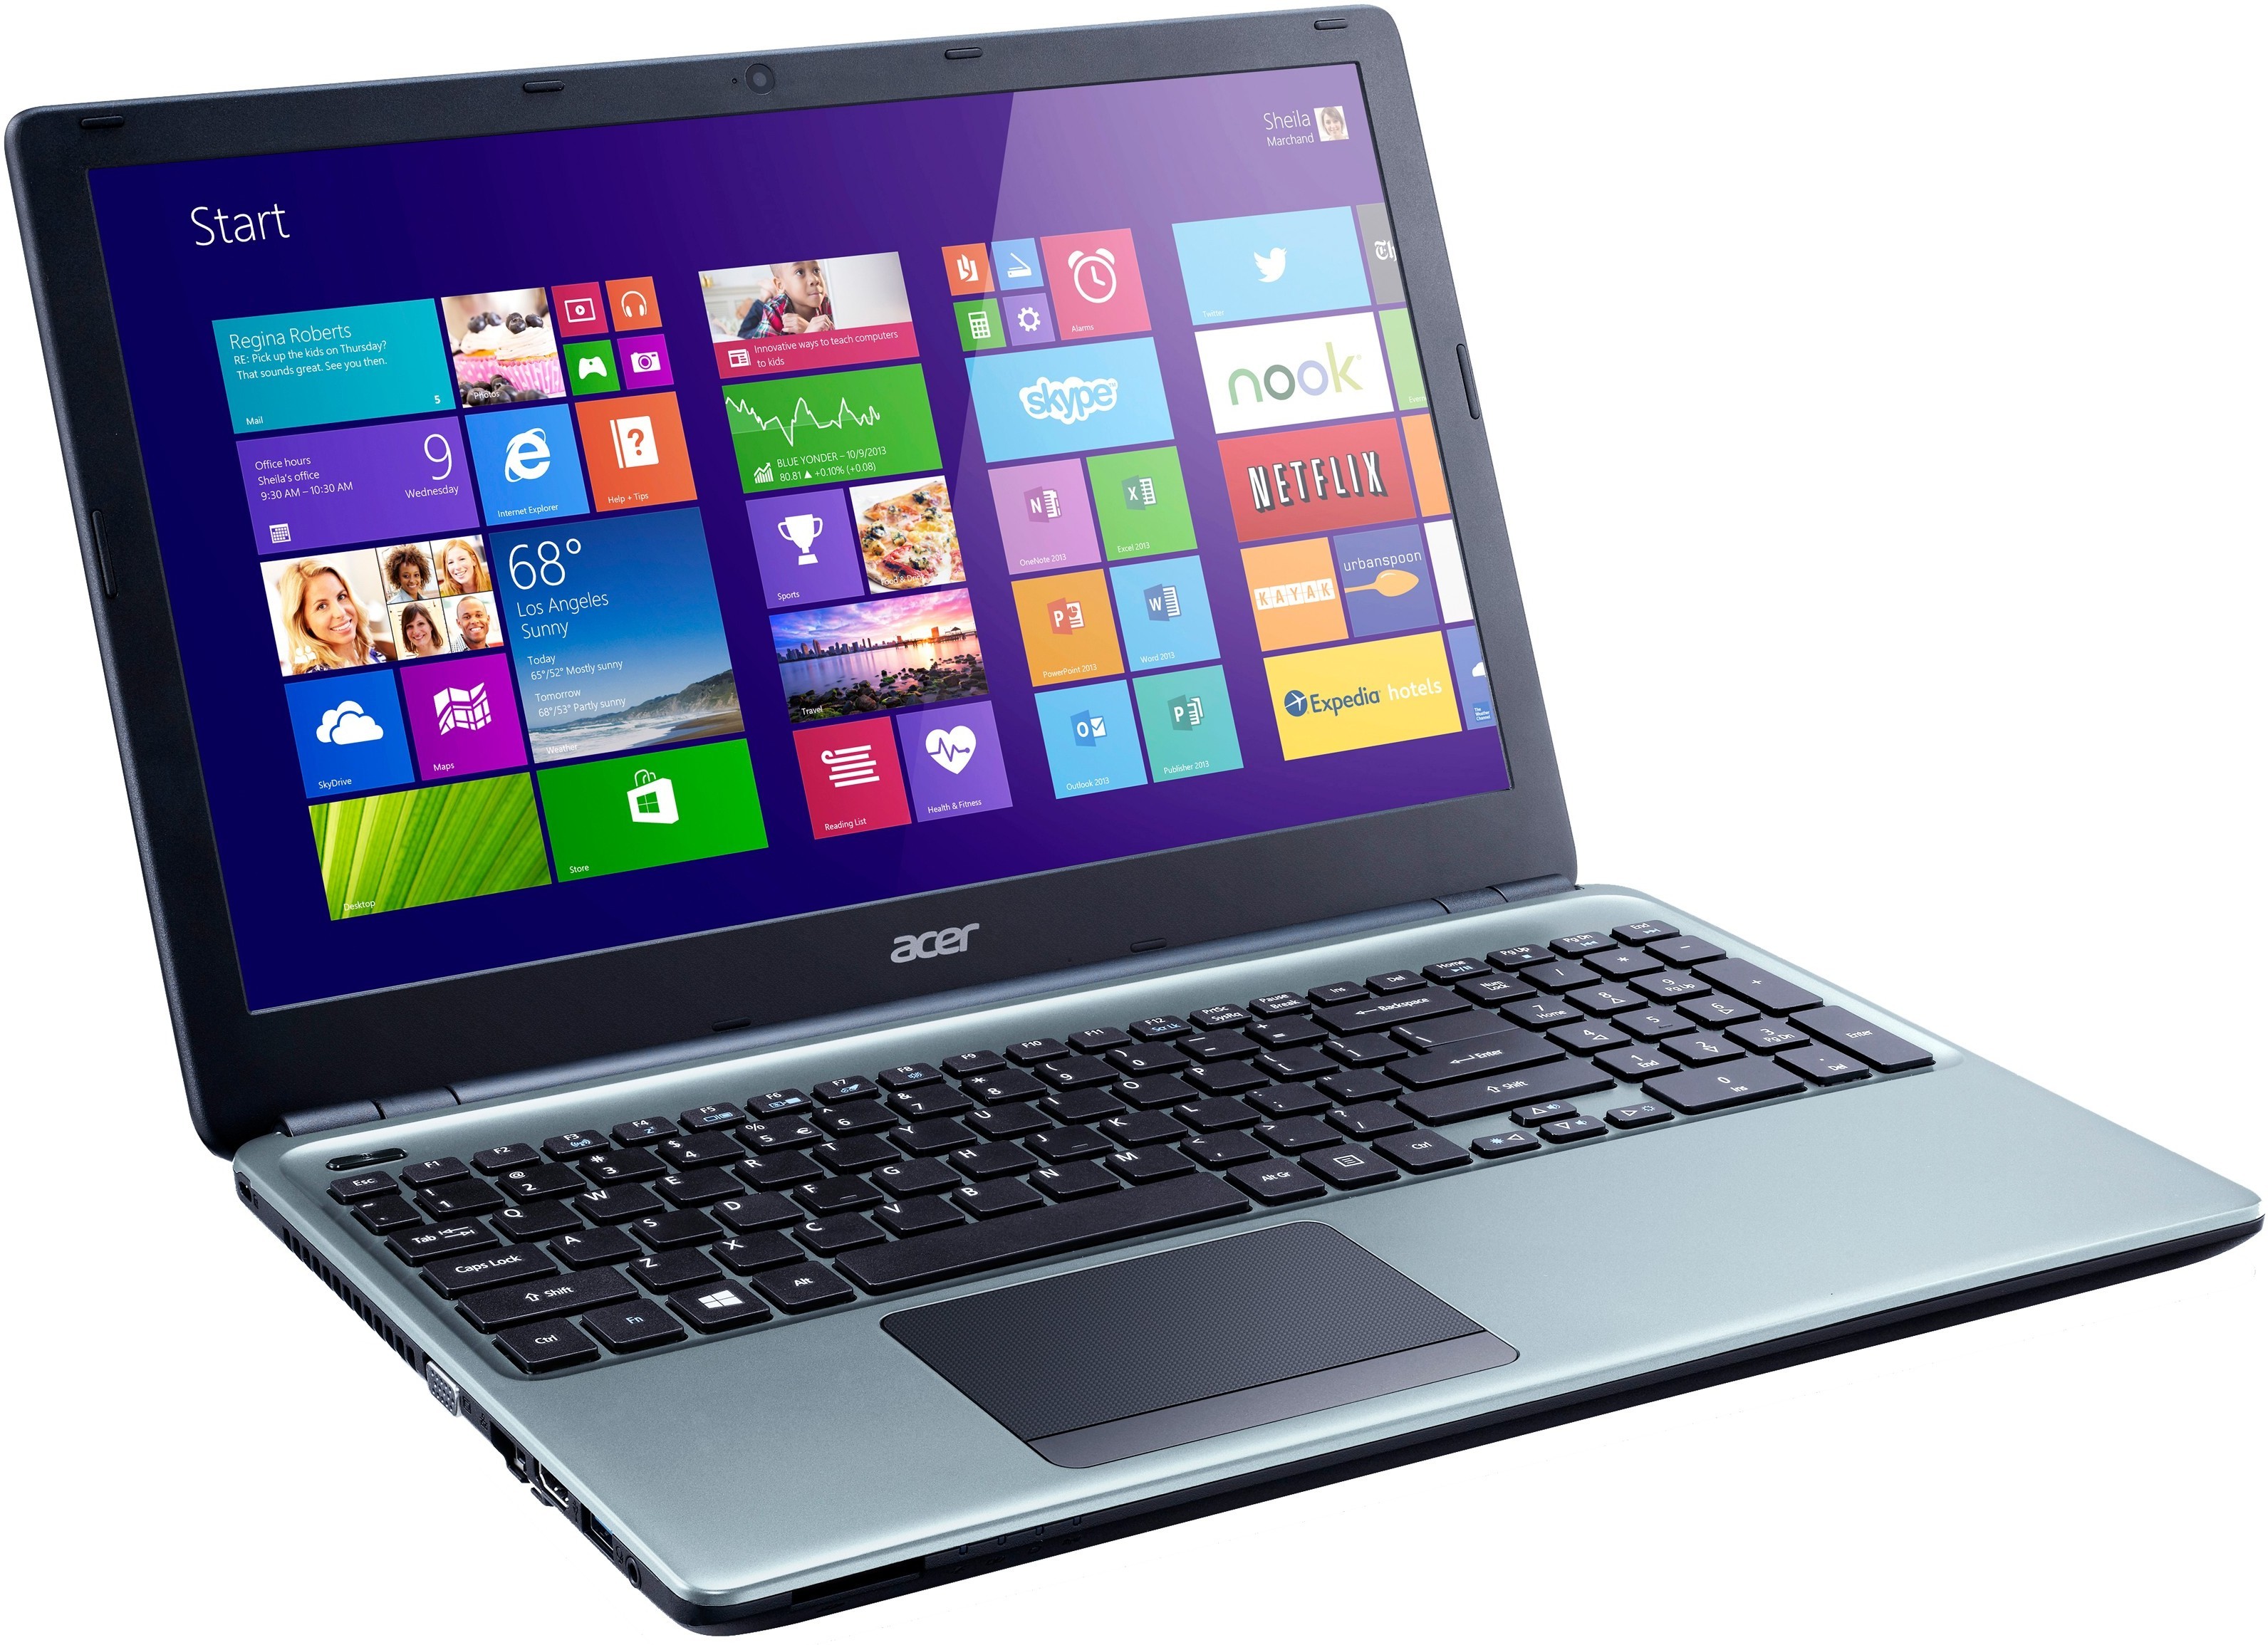 Acer Aspire E1-572G i5-4200U 8GB 1000GB HDD HD8670M